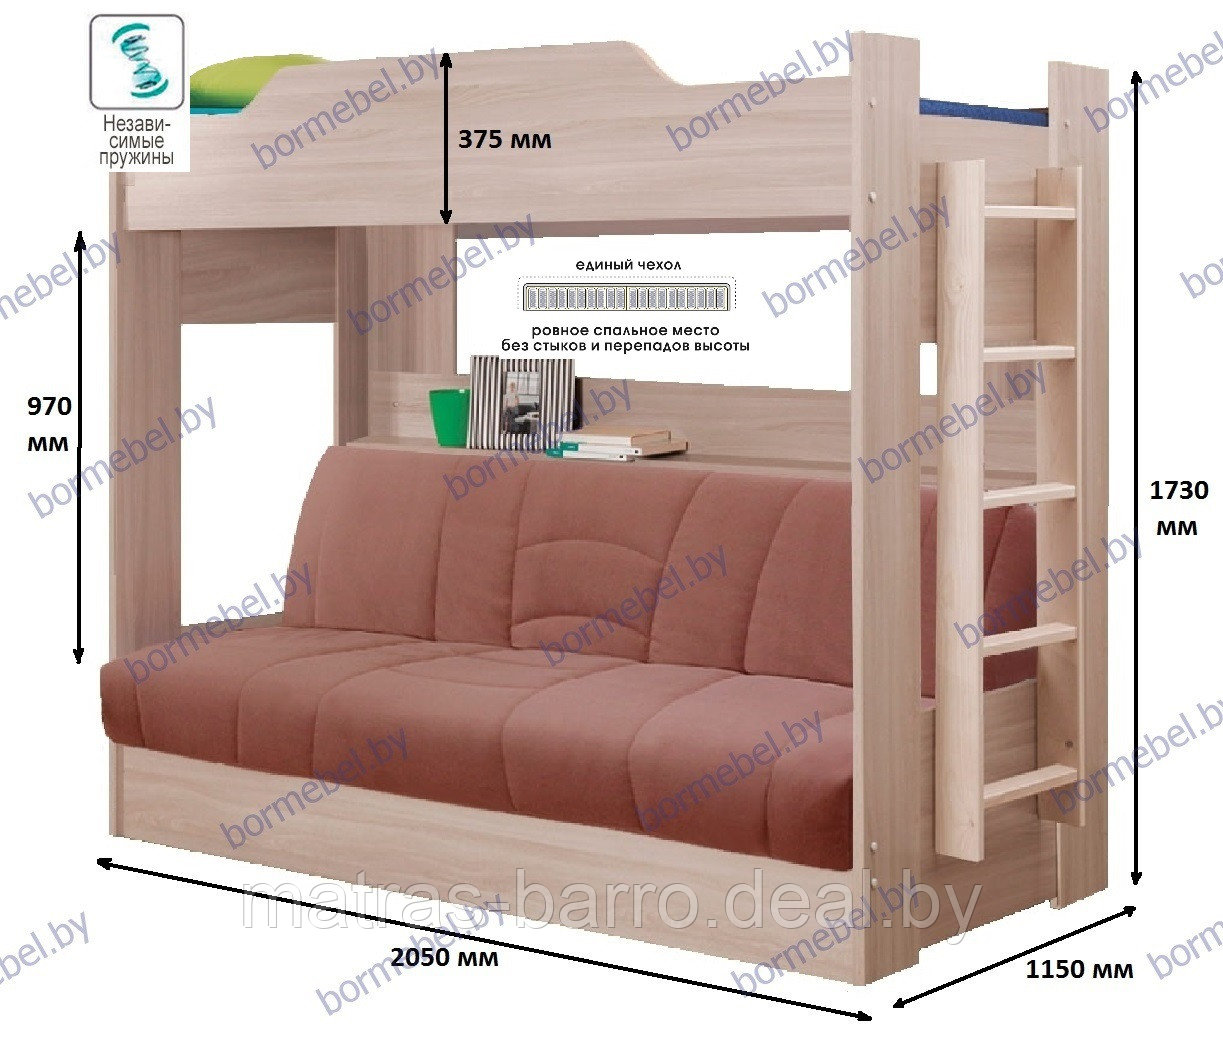 Двухъярусная кровать с диваном на независимом блоке пружин